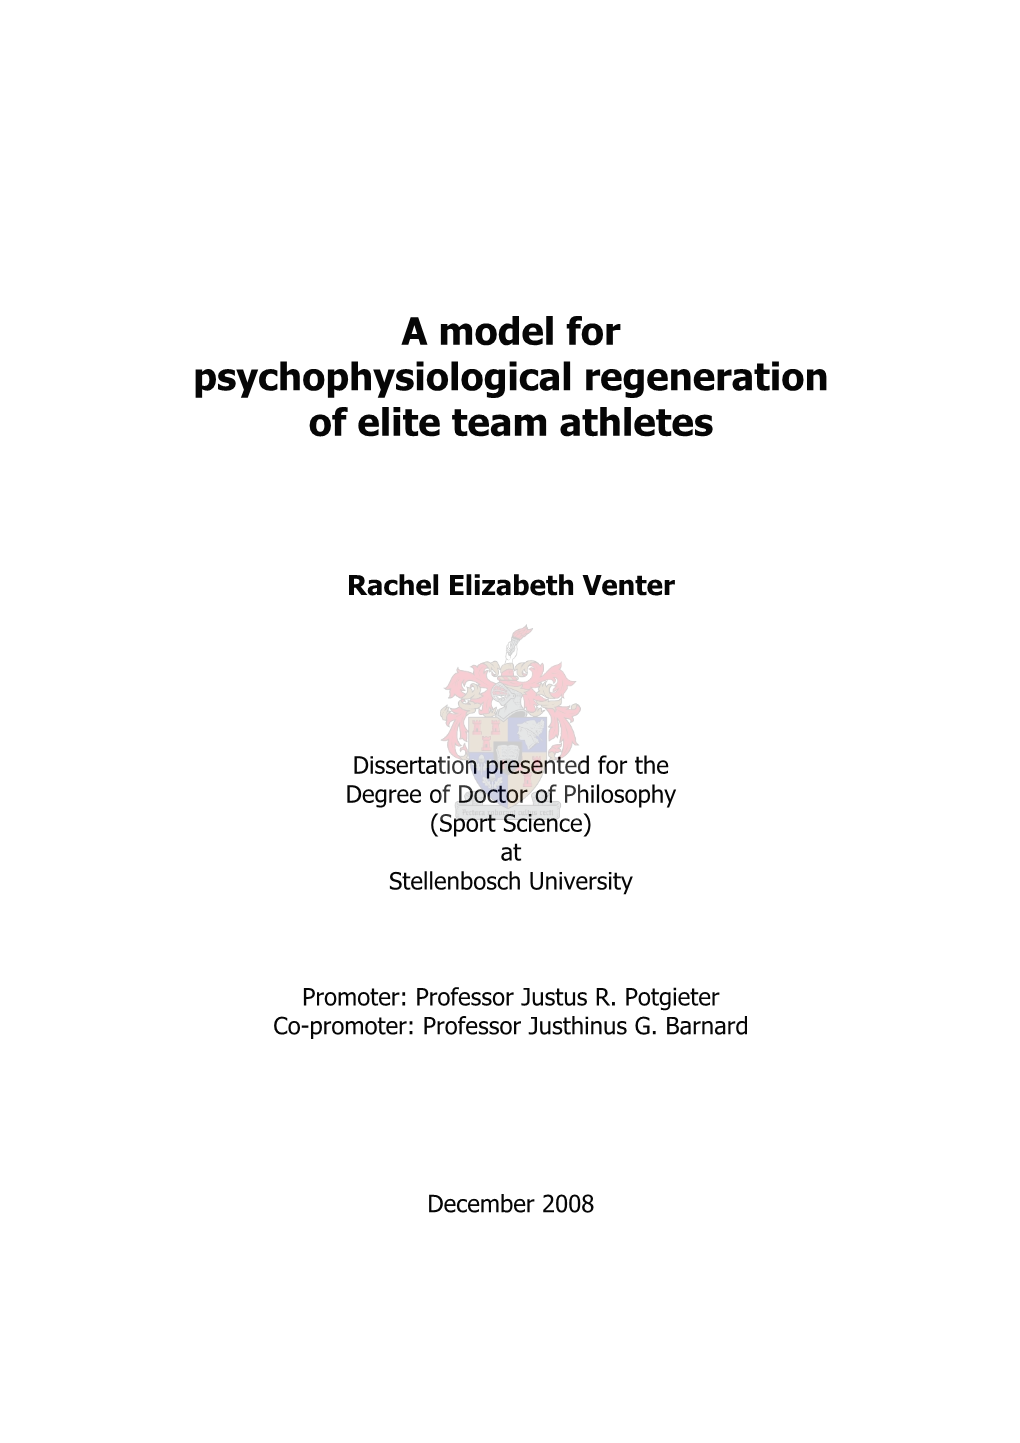 A Model for Psychophysiological Regeneration of Elite Team Athletes